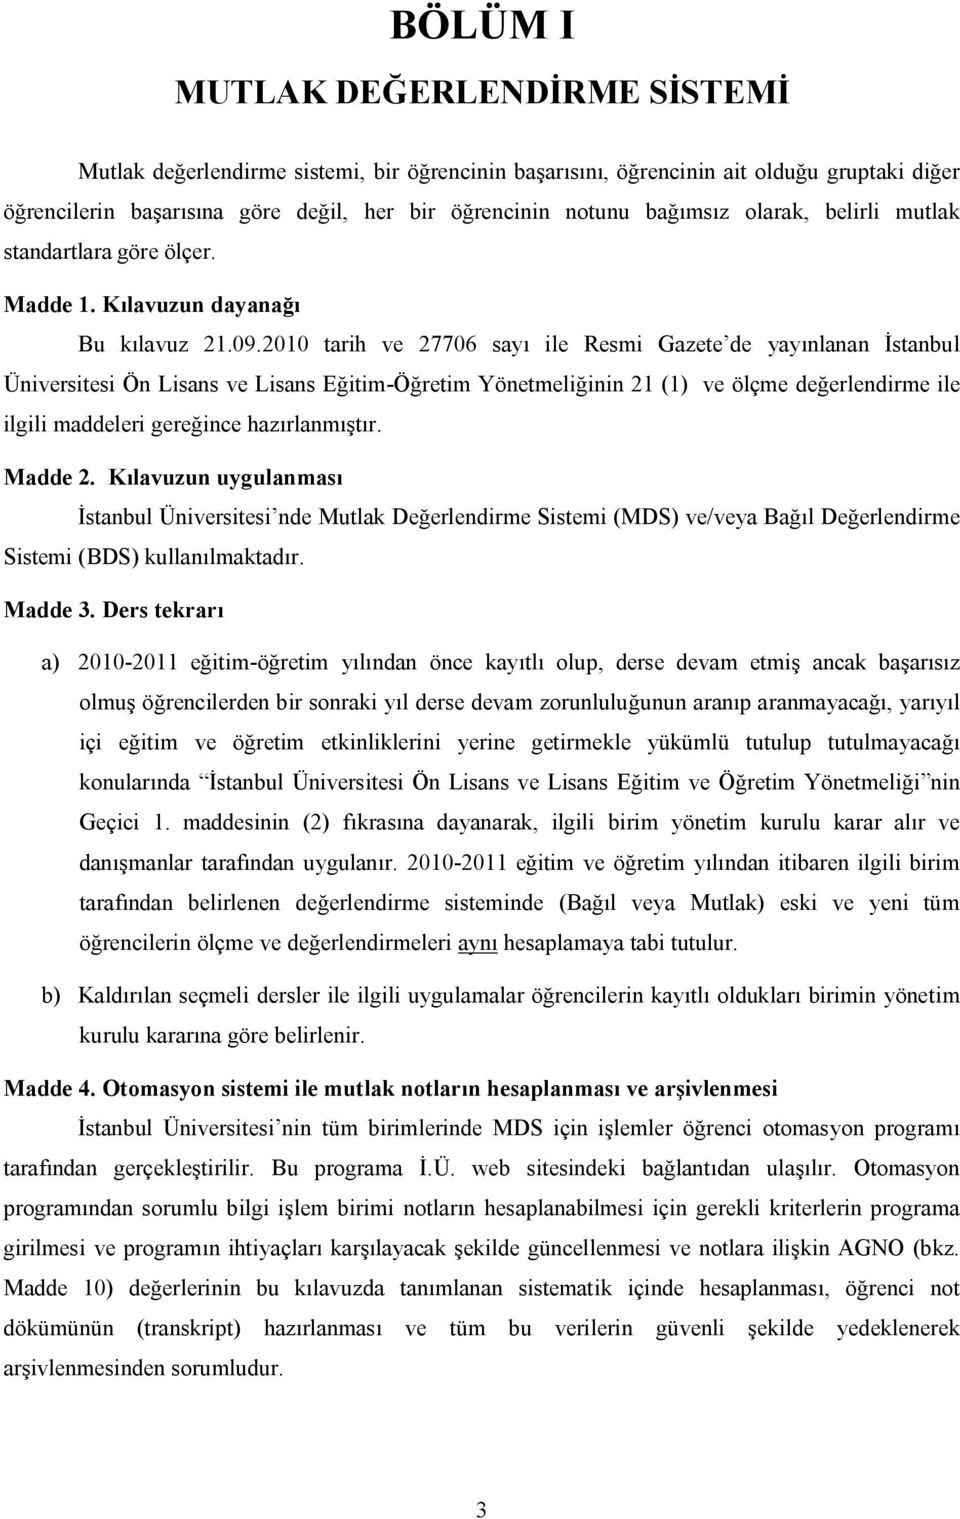 2010 tarih ve 27706 sayı ile Resmi Gazete de yayınlanan İstanbul Üniversitesi Ön Lisans ve Lisans Eğitim-Öğretim Yönetmeliğinin 21 (1) ve ölçme değerlendirme ile ilgili maddeleri gereğince